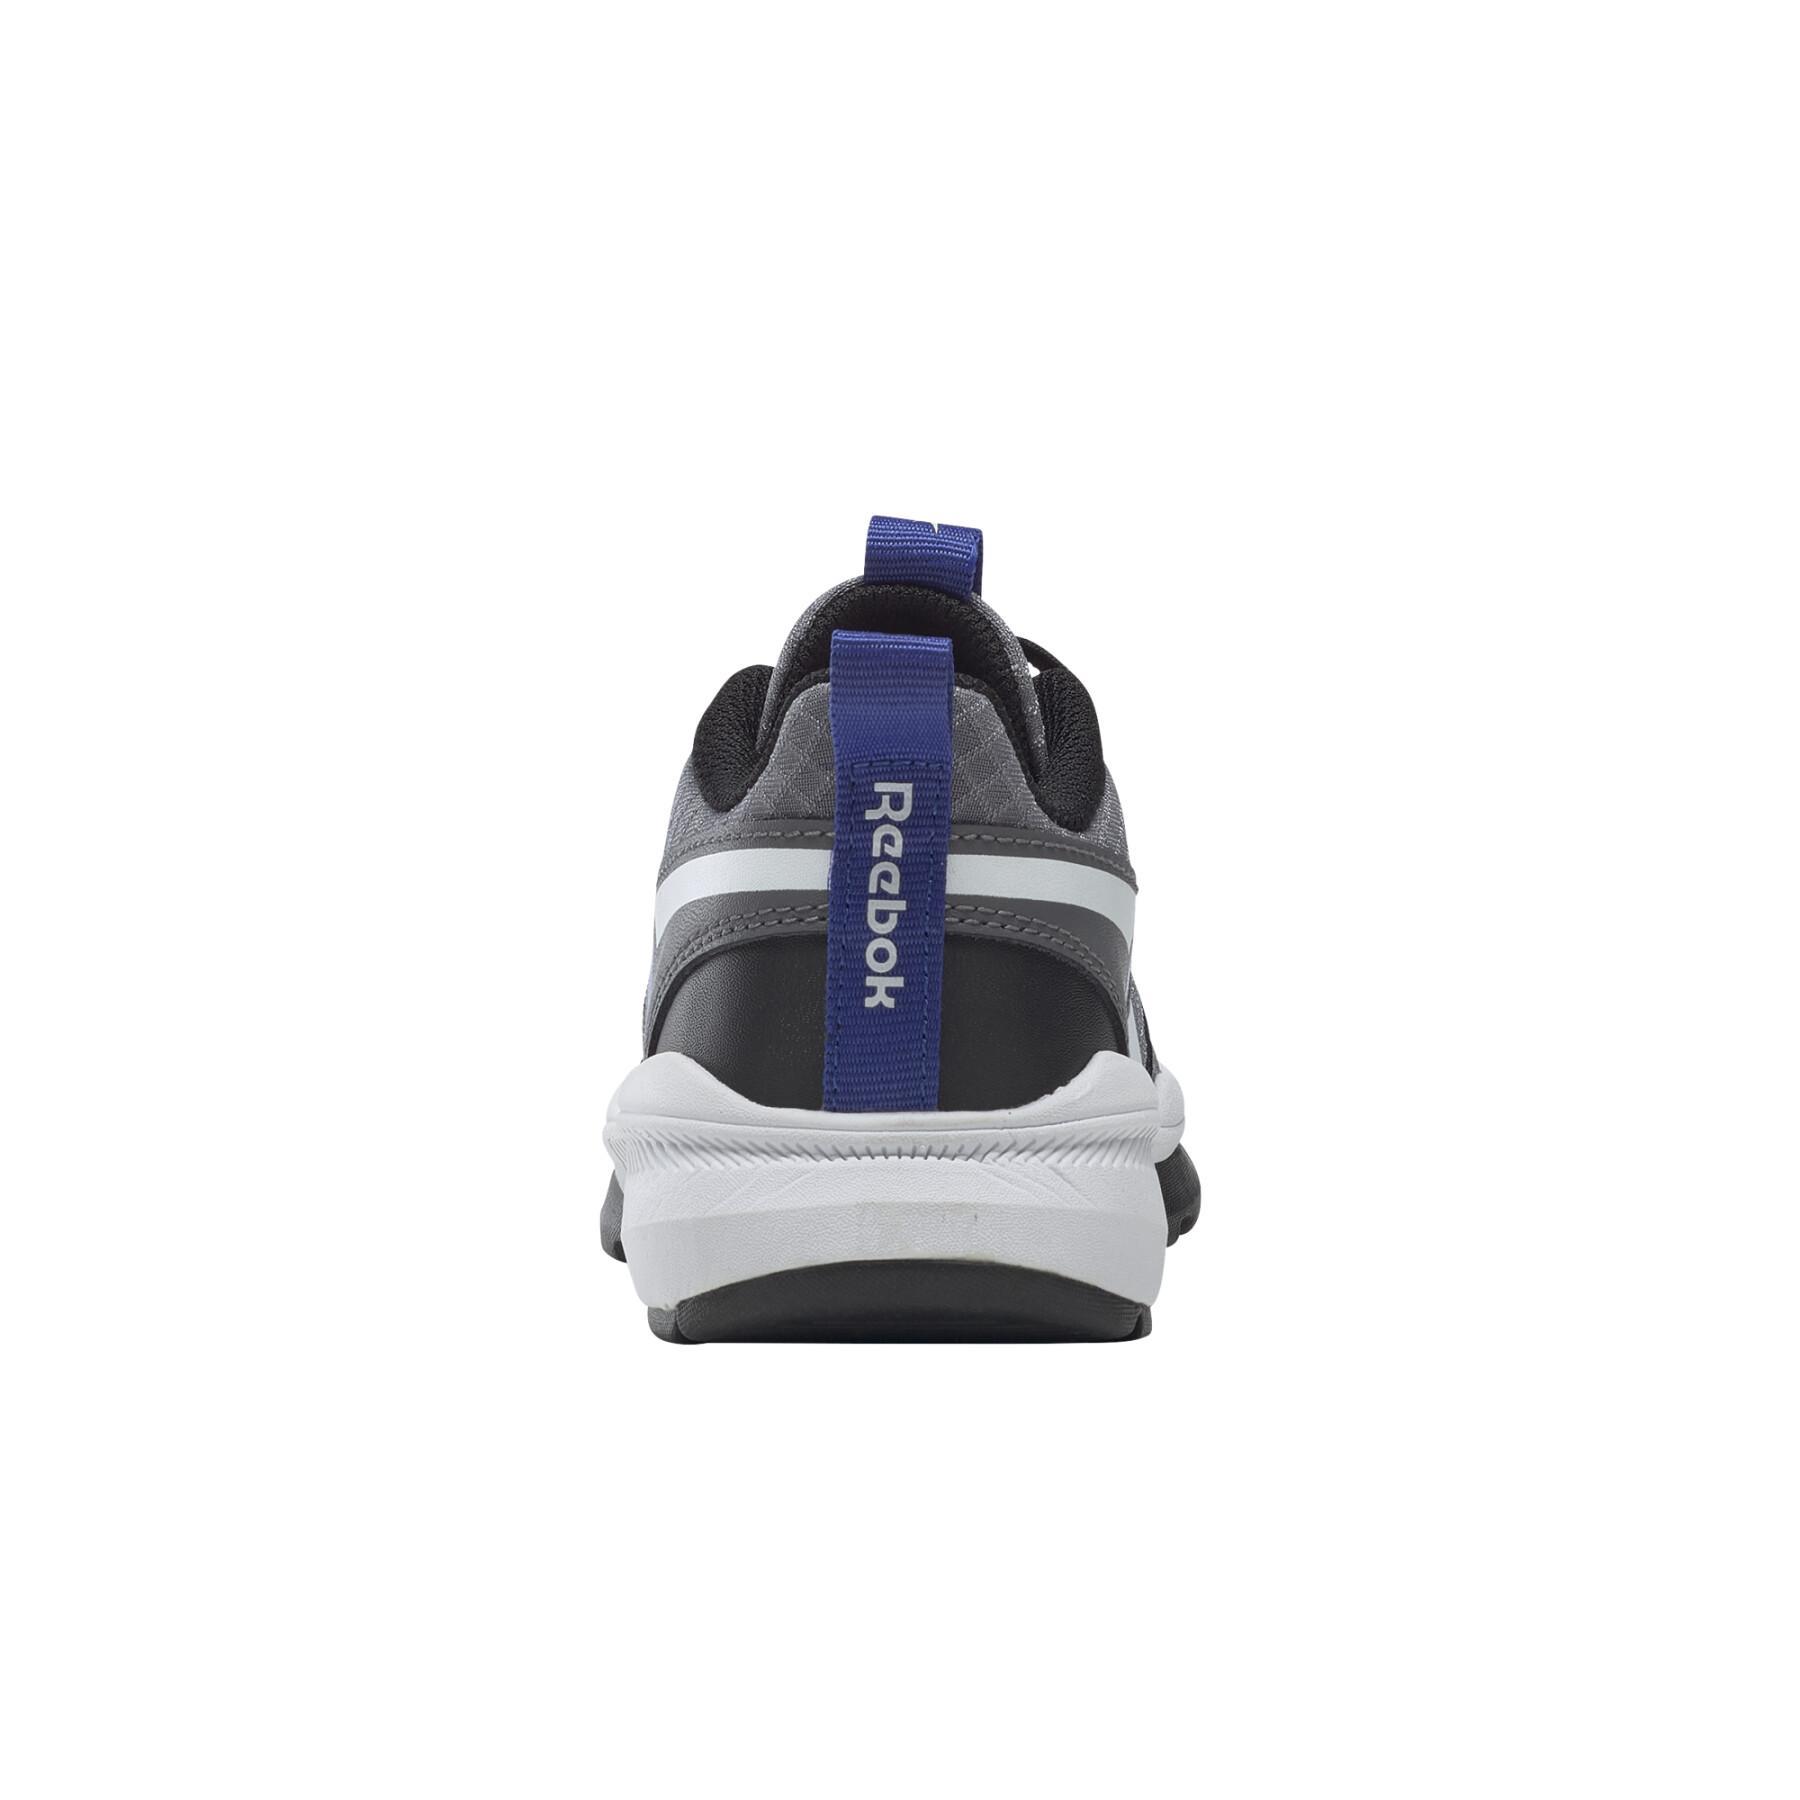 Children's shoes Reebok XT Sprinter 2